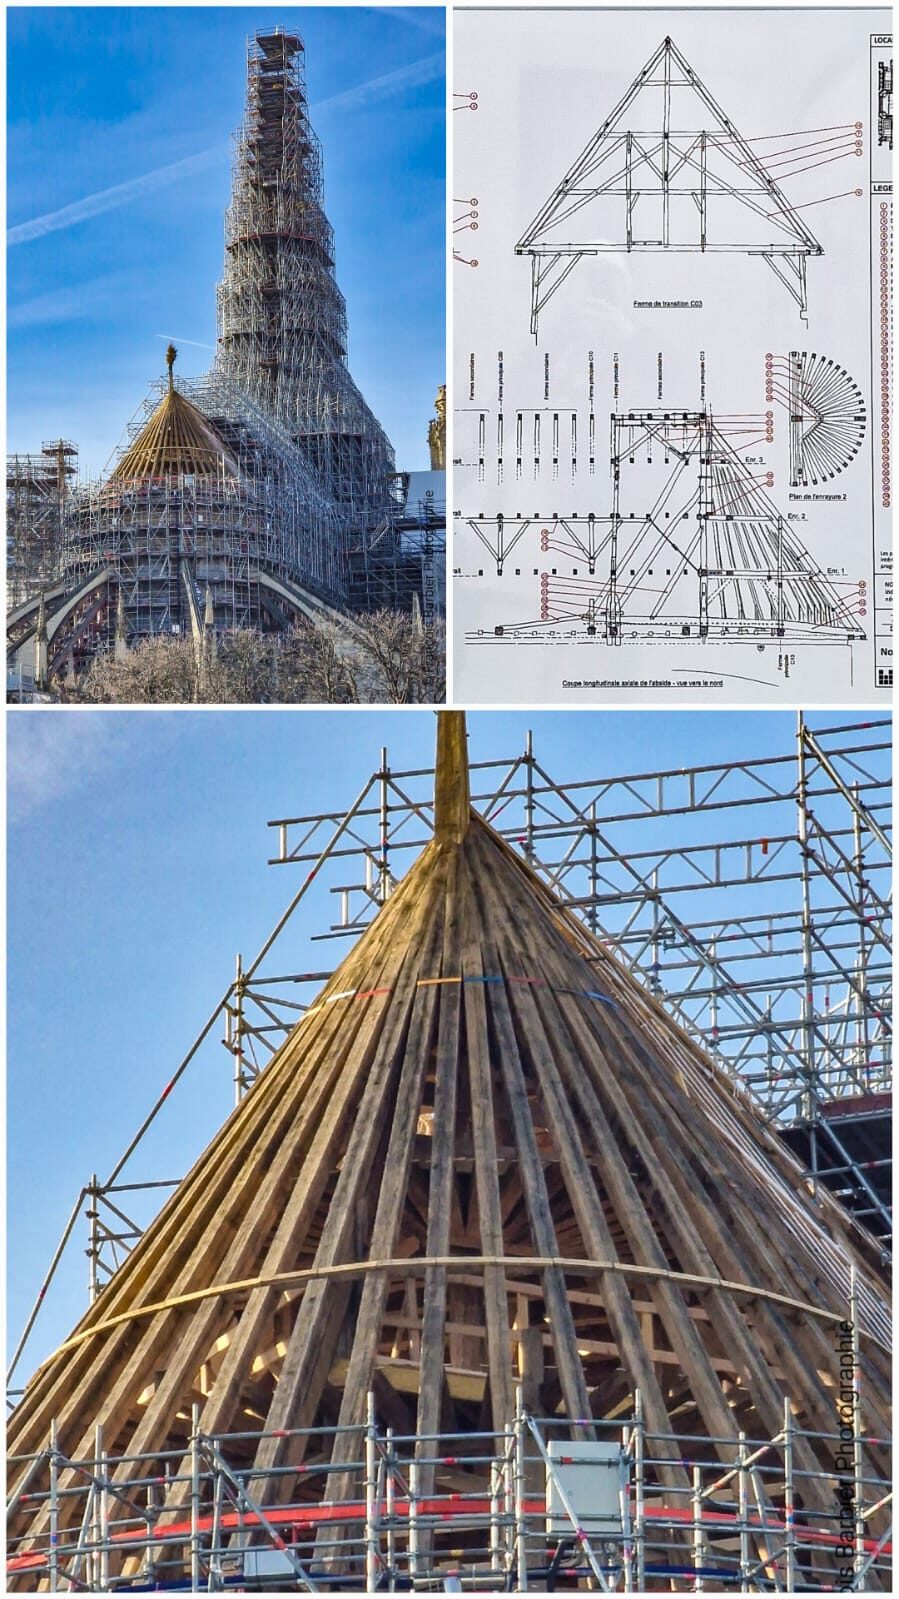 Conférence : Reconstruire Notre-Dame, par Philippe Villeneuve (contact@unsfa.paris si billet indisponible)